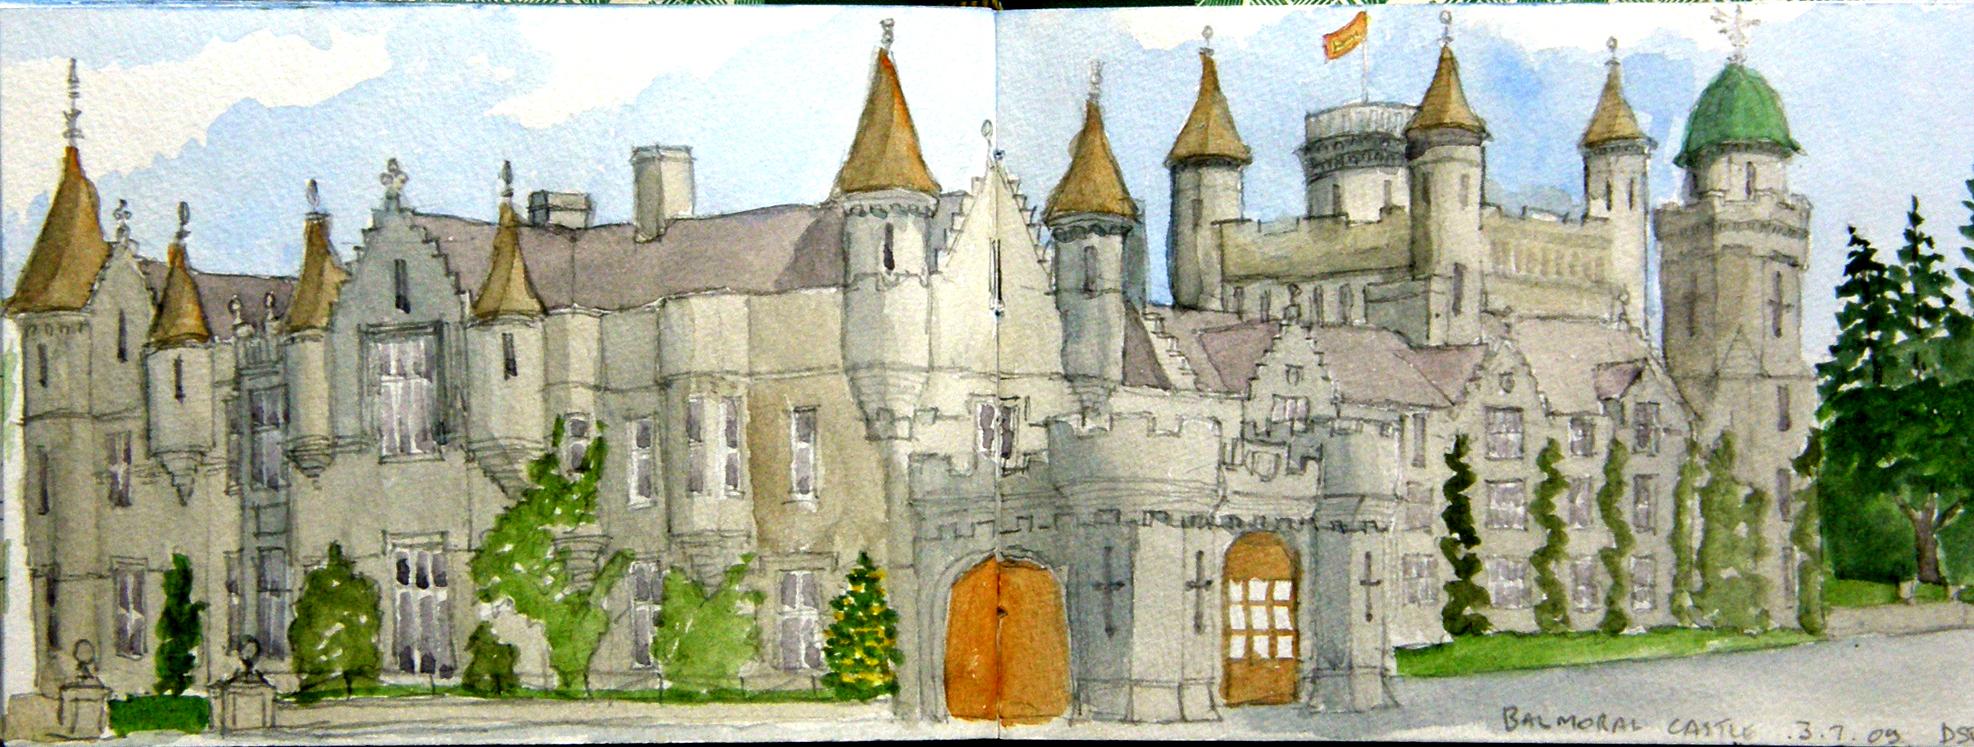 Castle Arts Sketchbooks, Art Drawing Sketch Pads